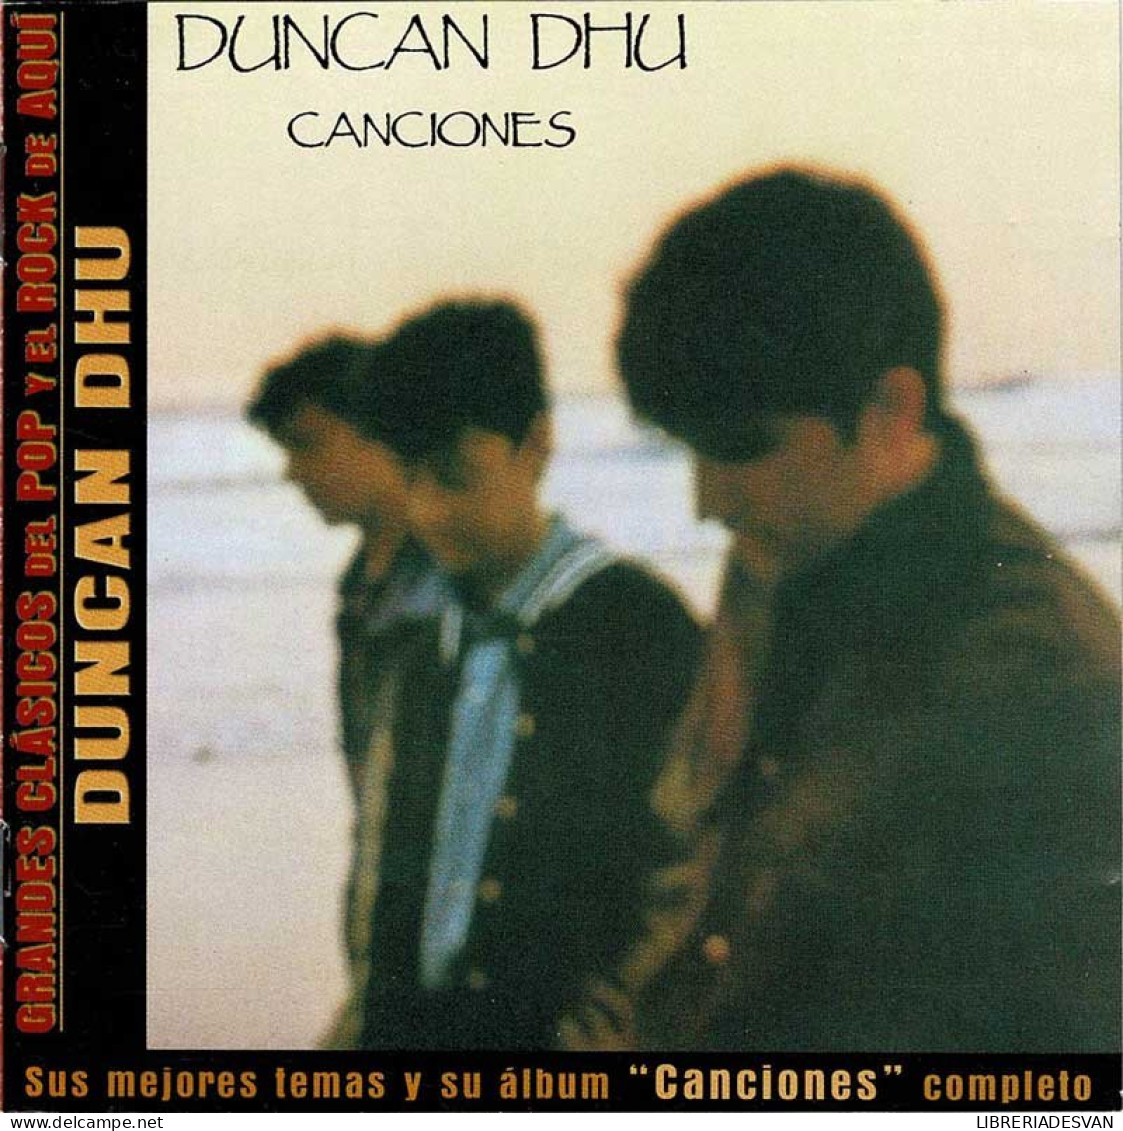 Duncan Dhu - Canciones. CD - Disco, Pop